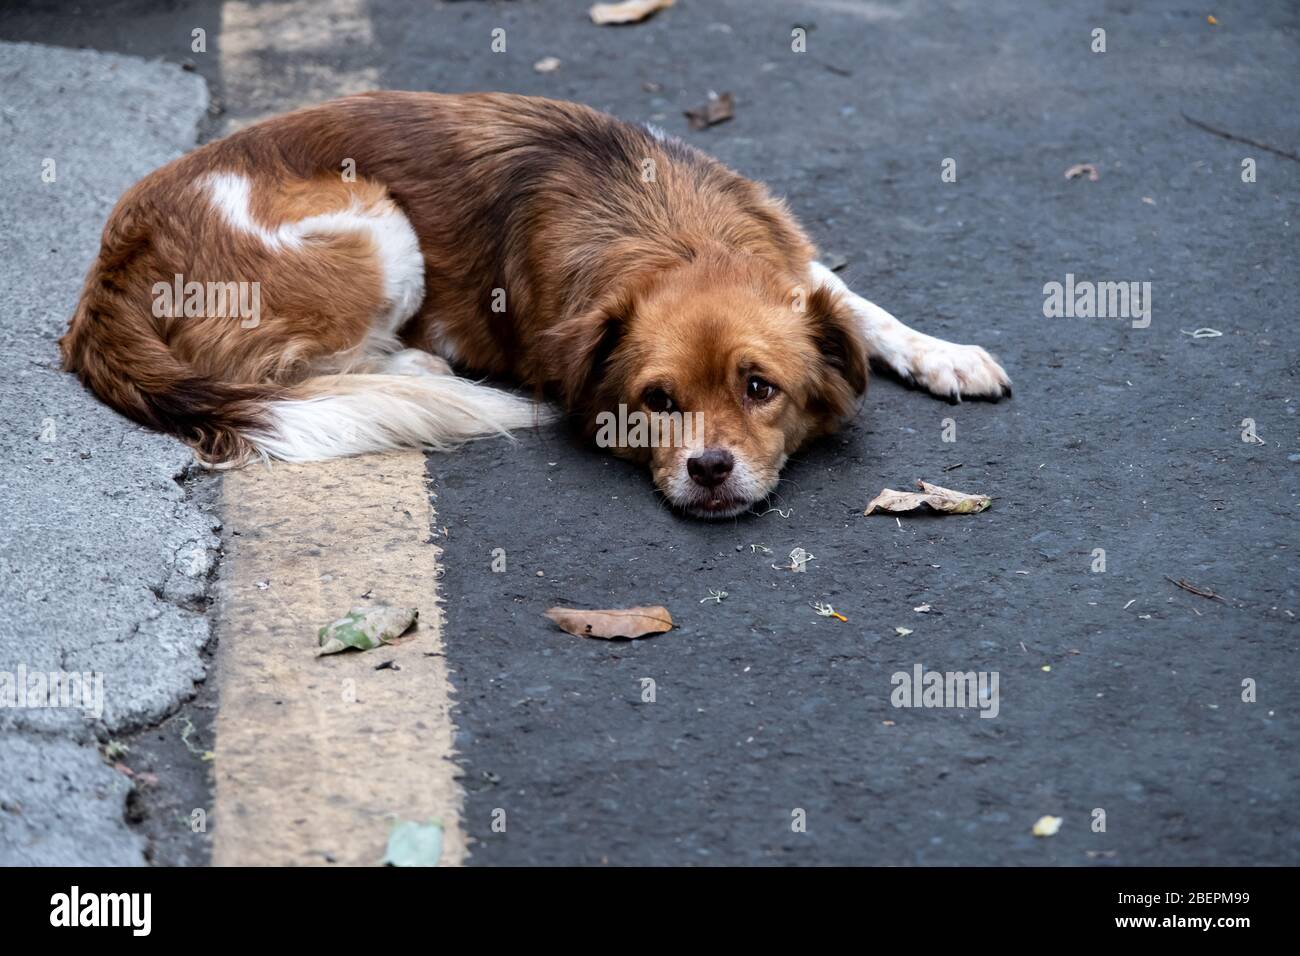 Innocent street dog, sweet lovely street dog resting on the floor Stock Photo